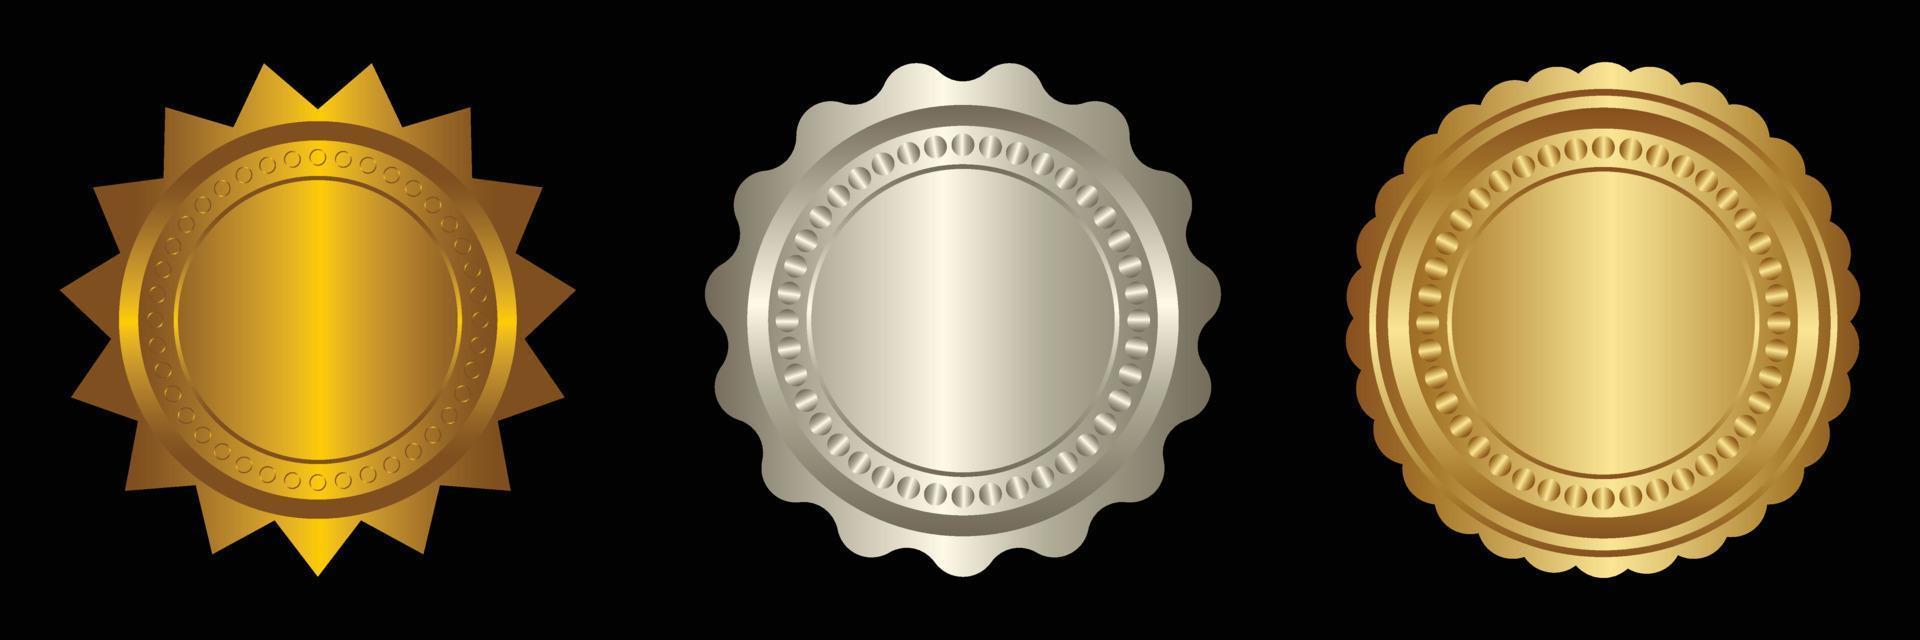 einstellen Vektor runden golden und Silber Abzeichen isoliert, Siegel Briefmarke Gold Luxus elegant Banner Symbol, Vektor Illustration Zertifikat Silber vereiteln Siegel oder Medaille isoliert.